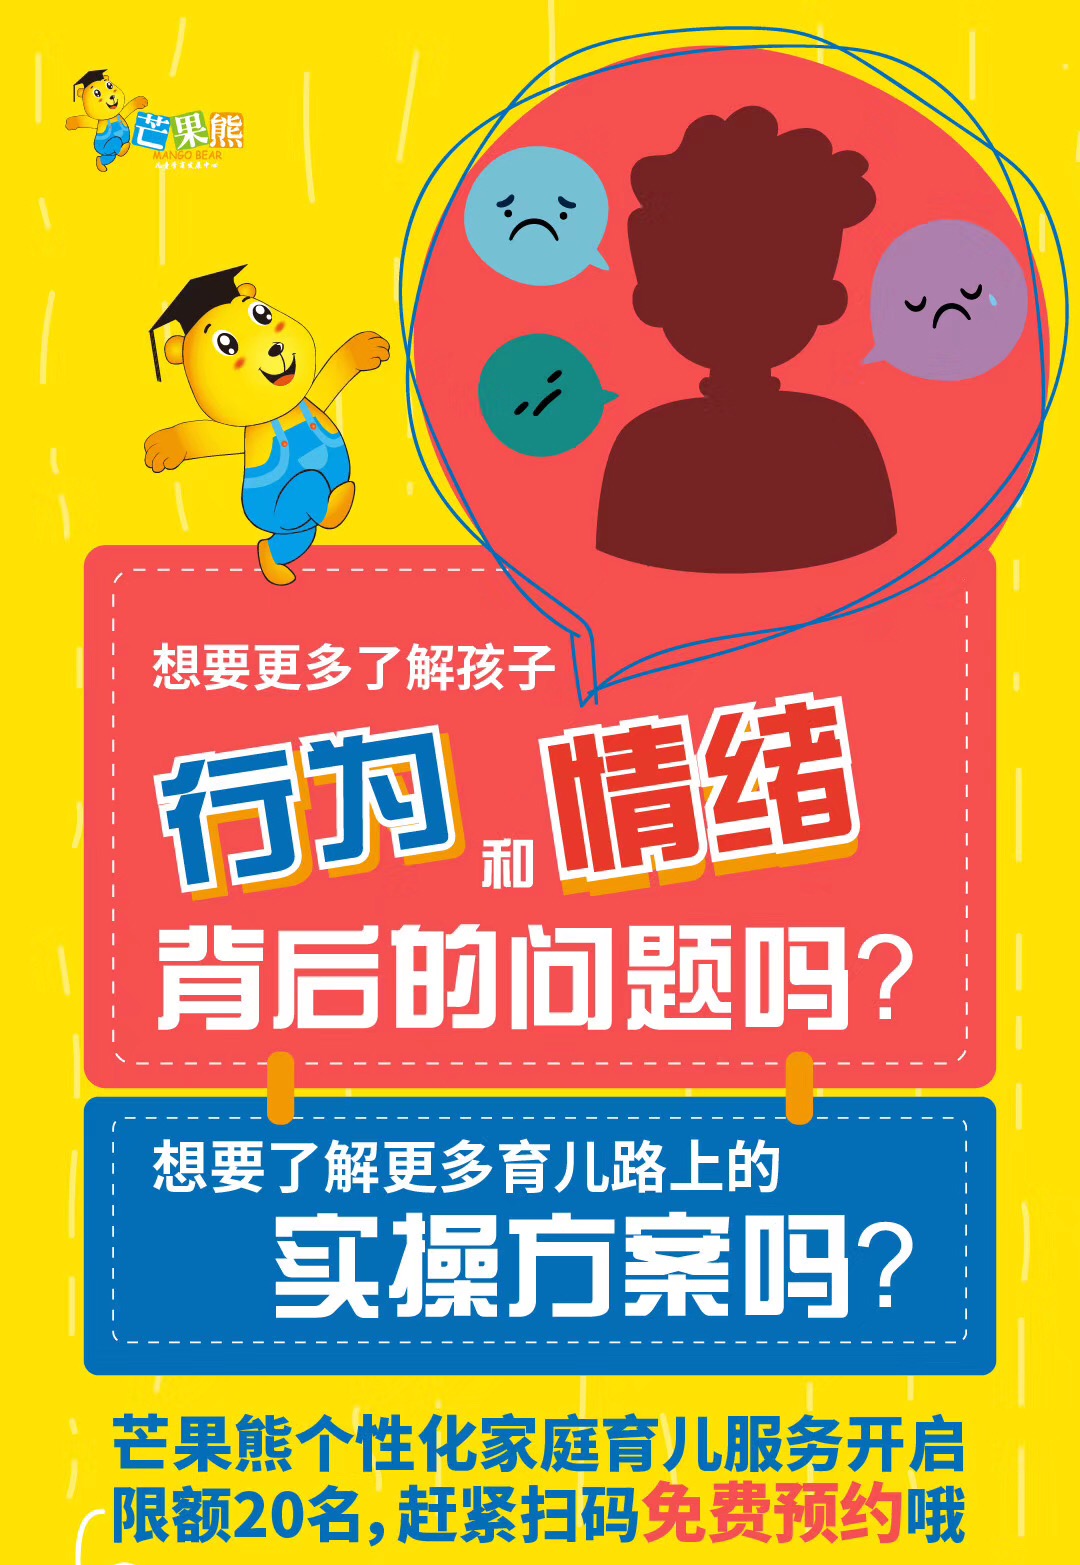 杭州芒果熊个性化家庭育儿服务正式上线，限20人免费预约